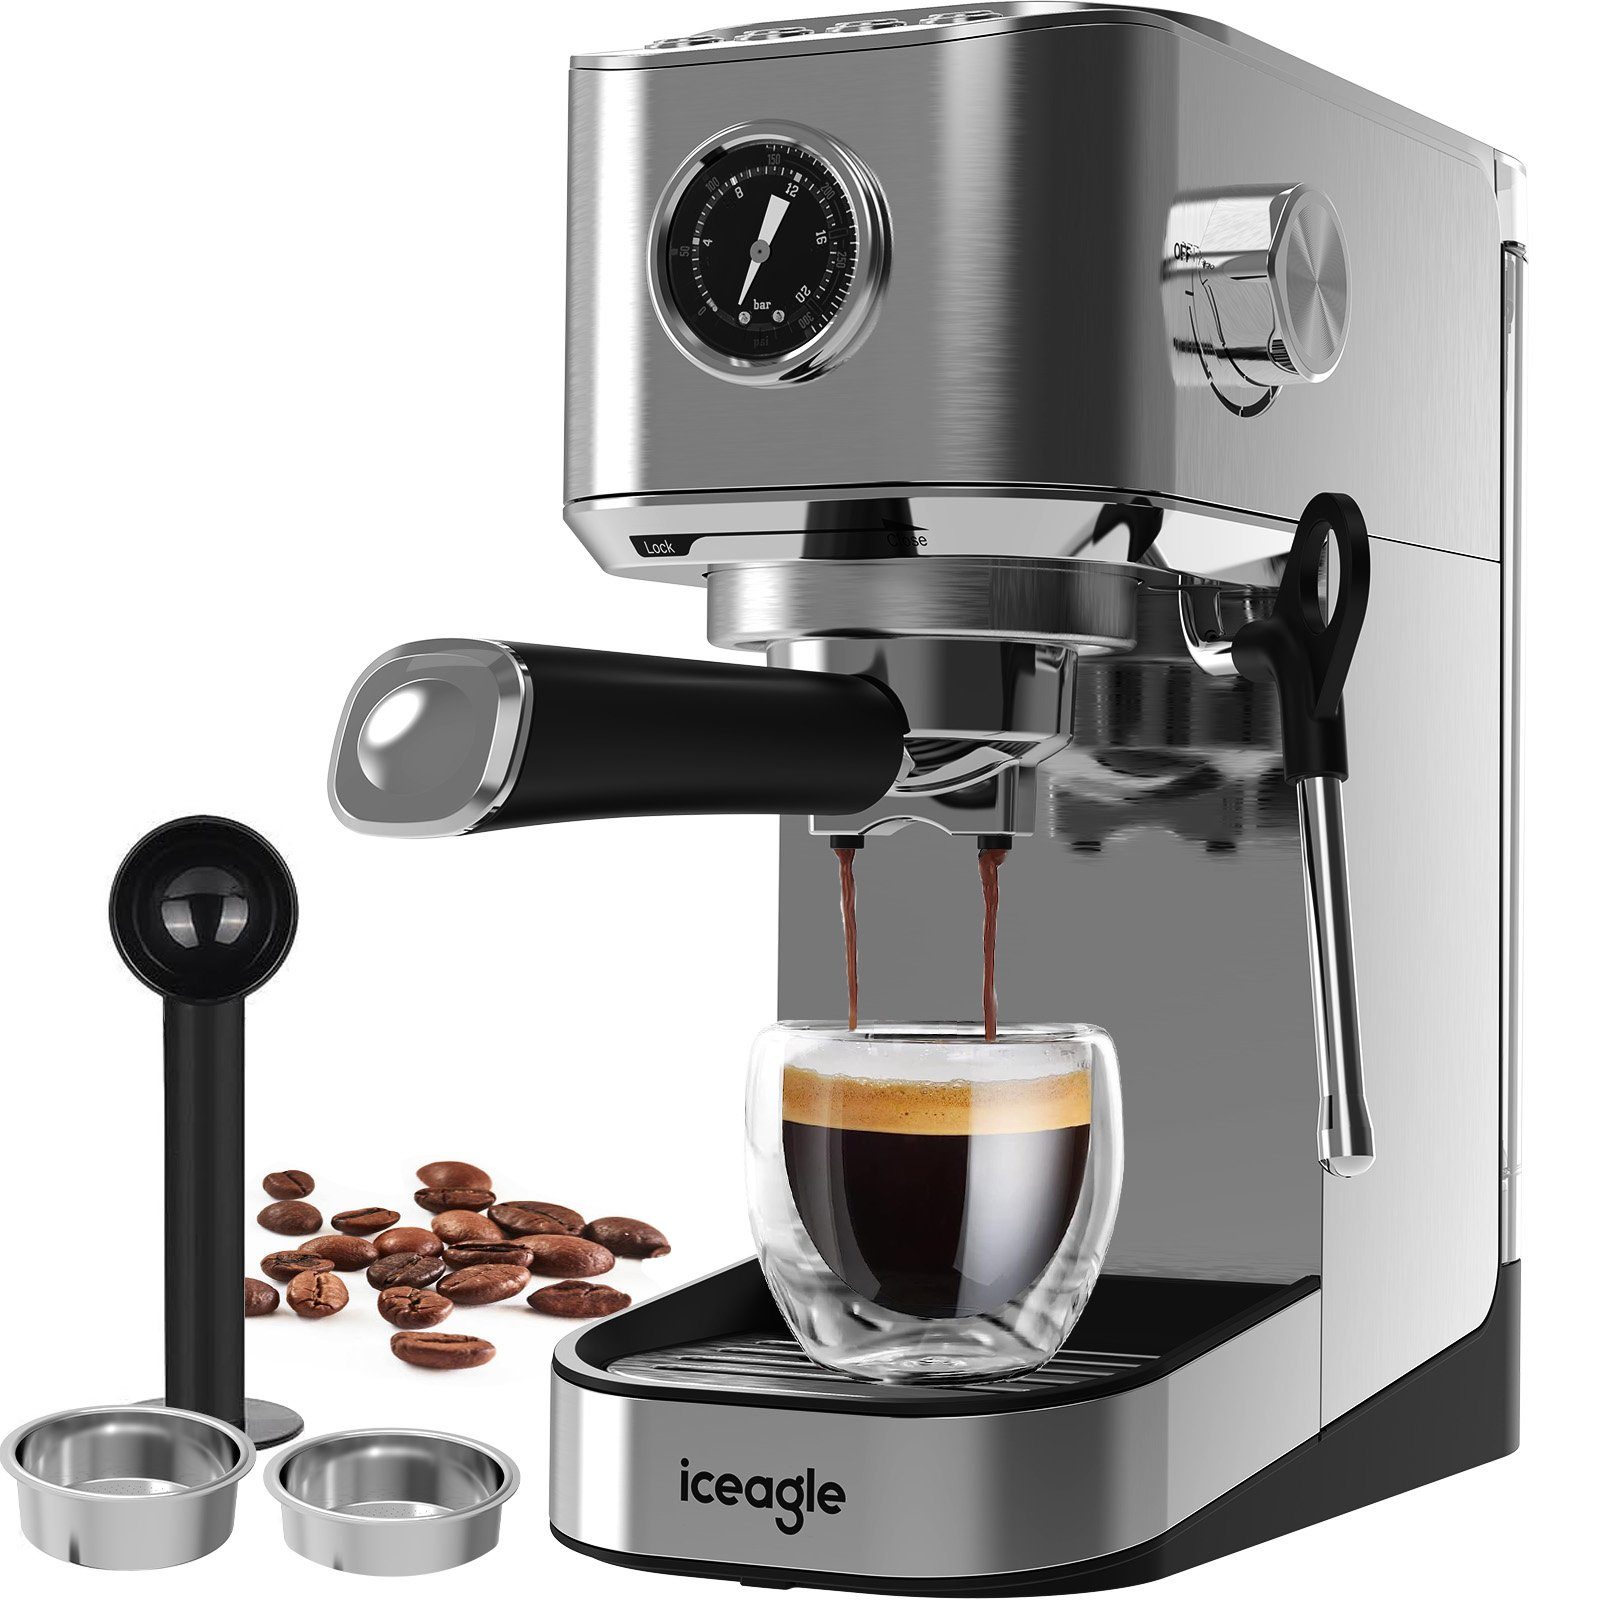 Aoucheni Espressomaschine Tassen,mit schnell Programmierbare,Zerkleinerer,1400W,Visuelles Manometer, Hochdruckpumpe Profi-Milchaufschäumer,20 Bar Korbfilter, 1-2